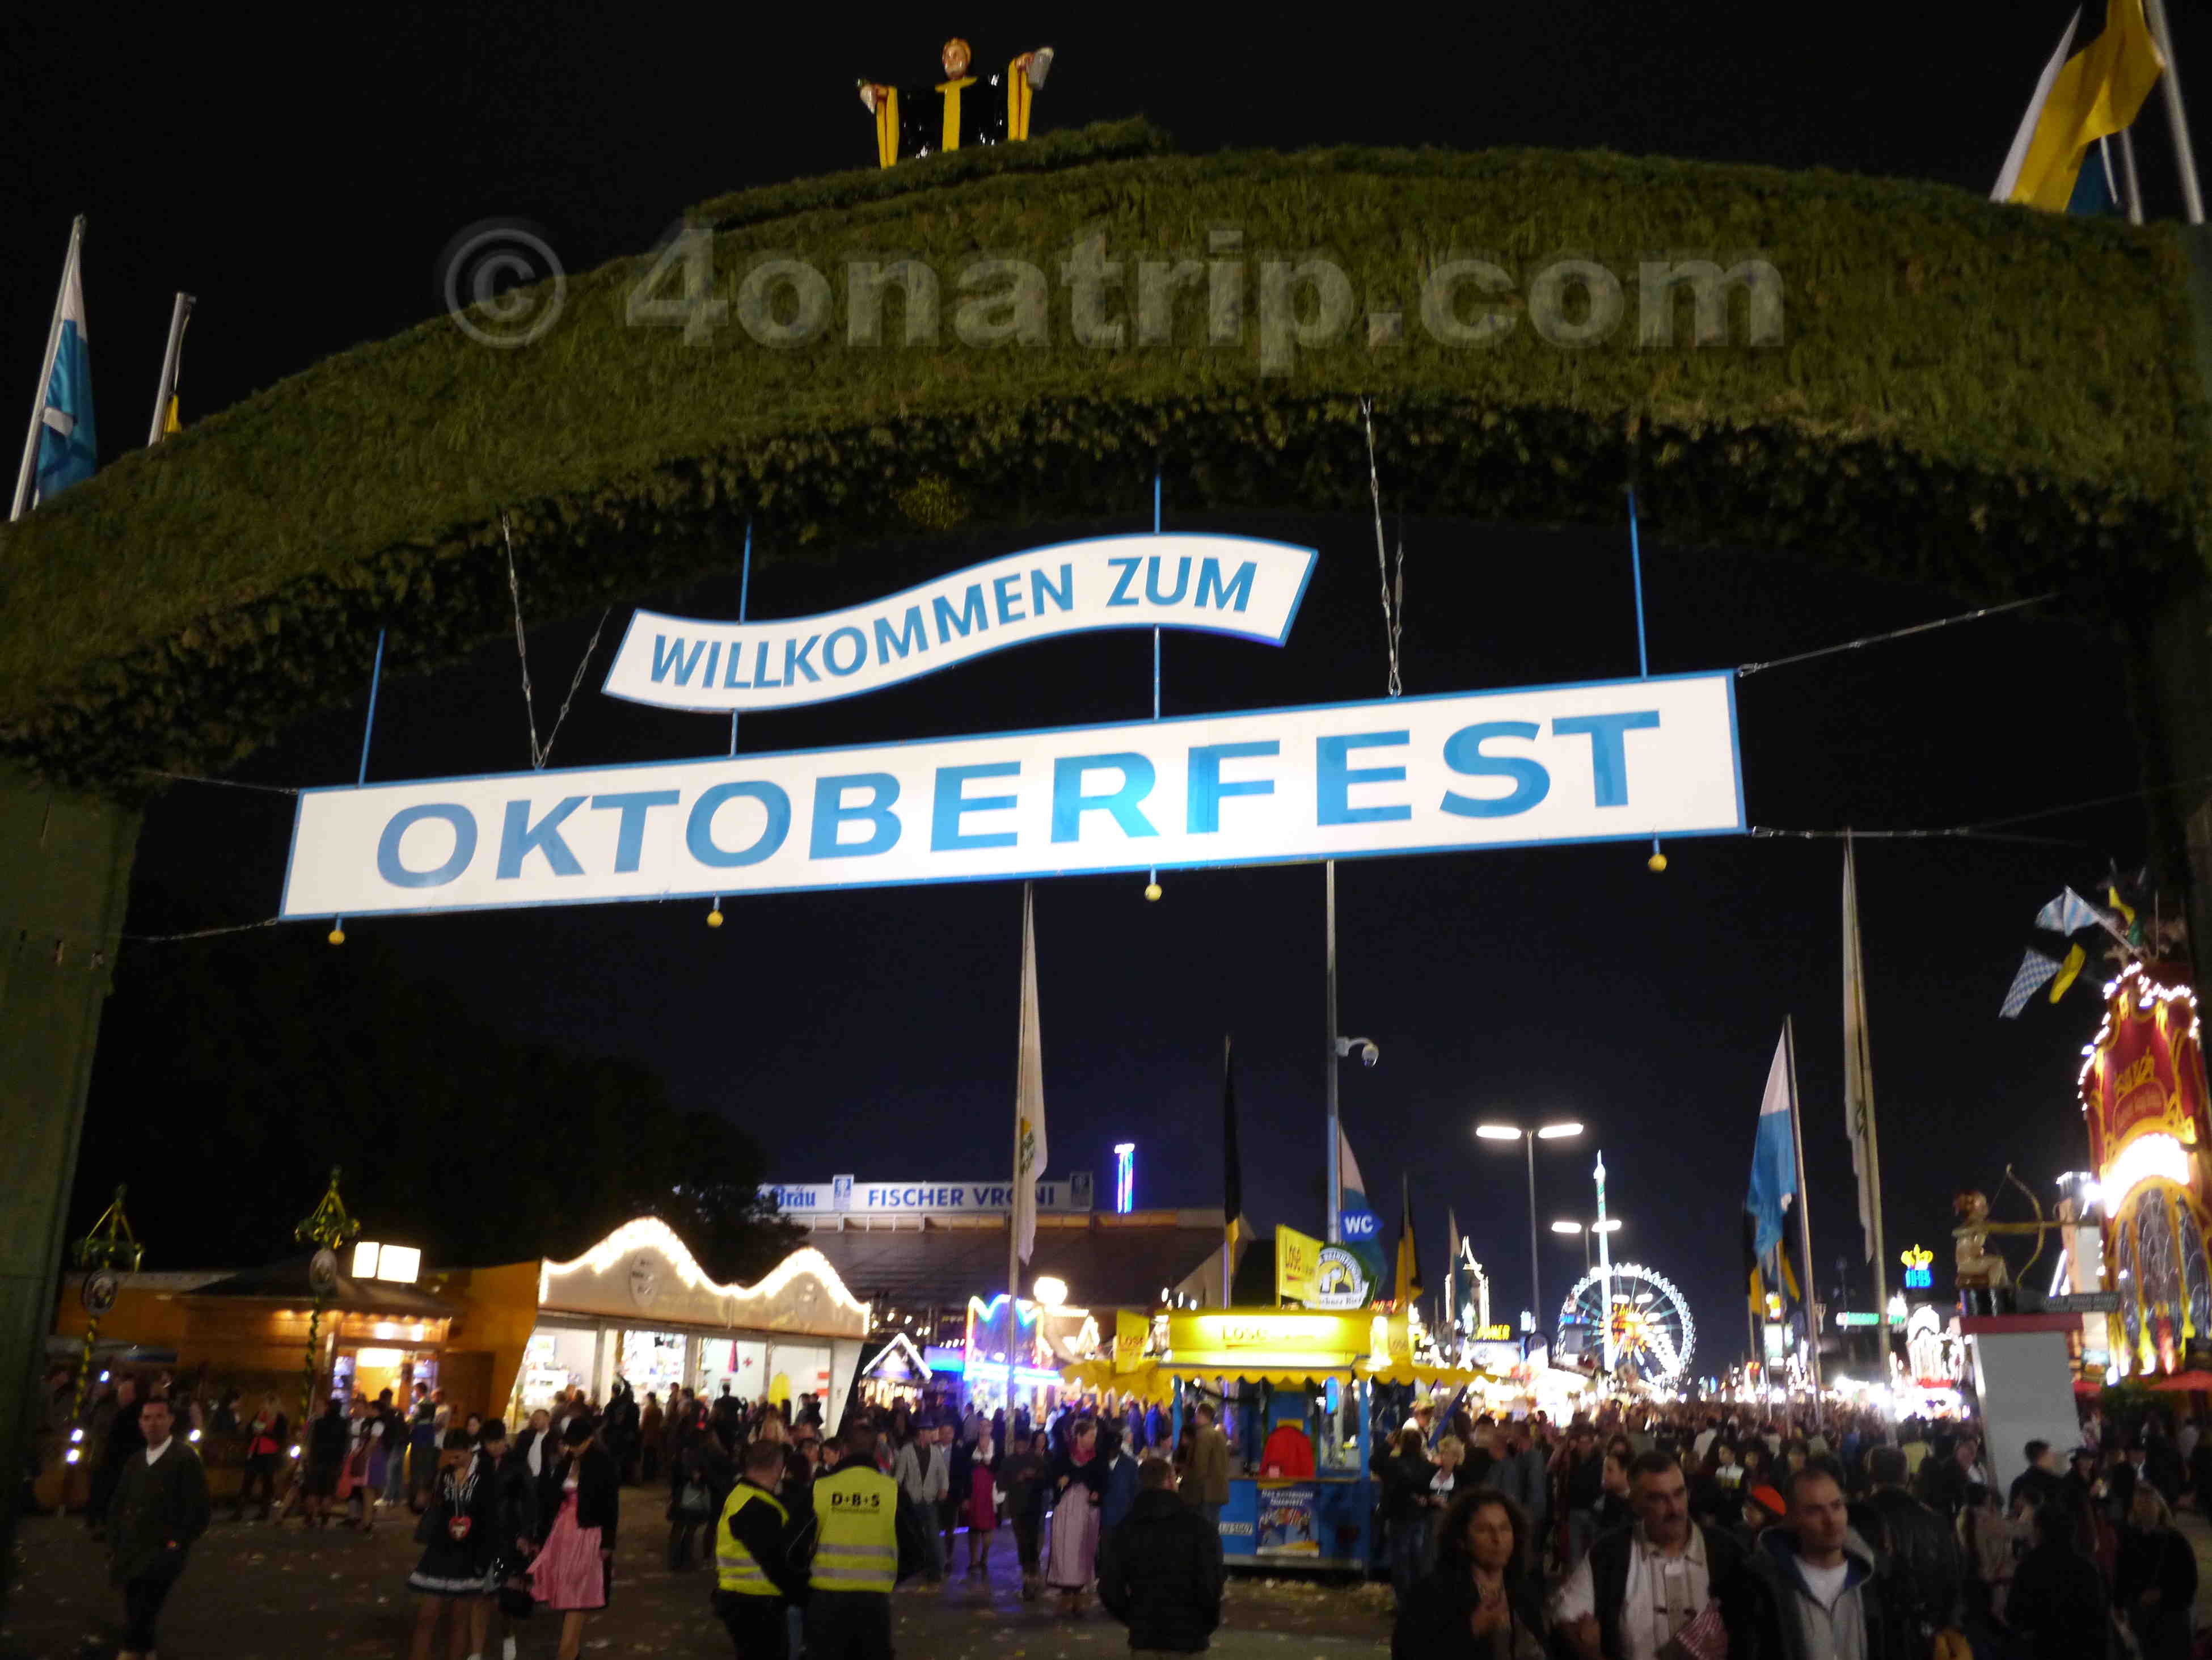 Oktoberfest 2013 in Munich Germany